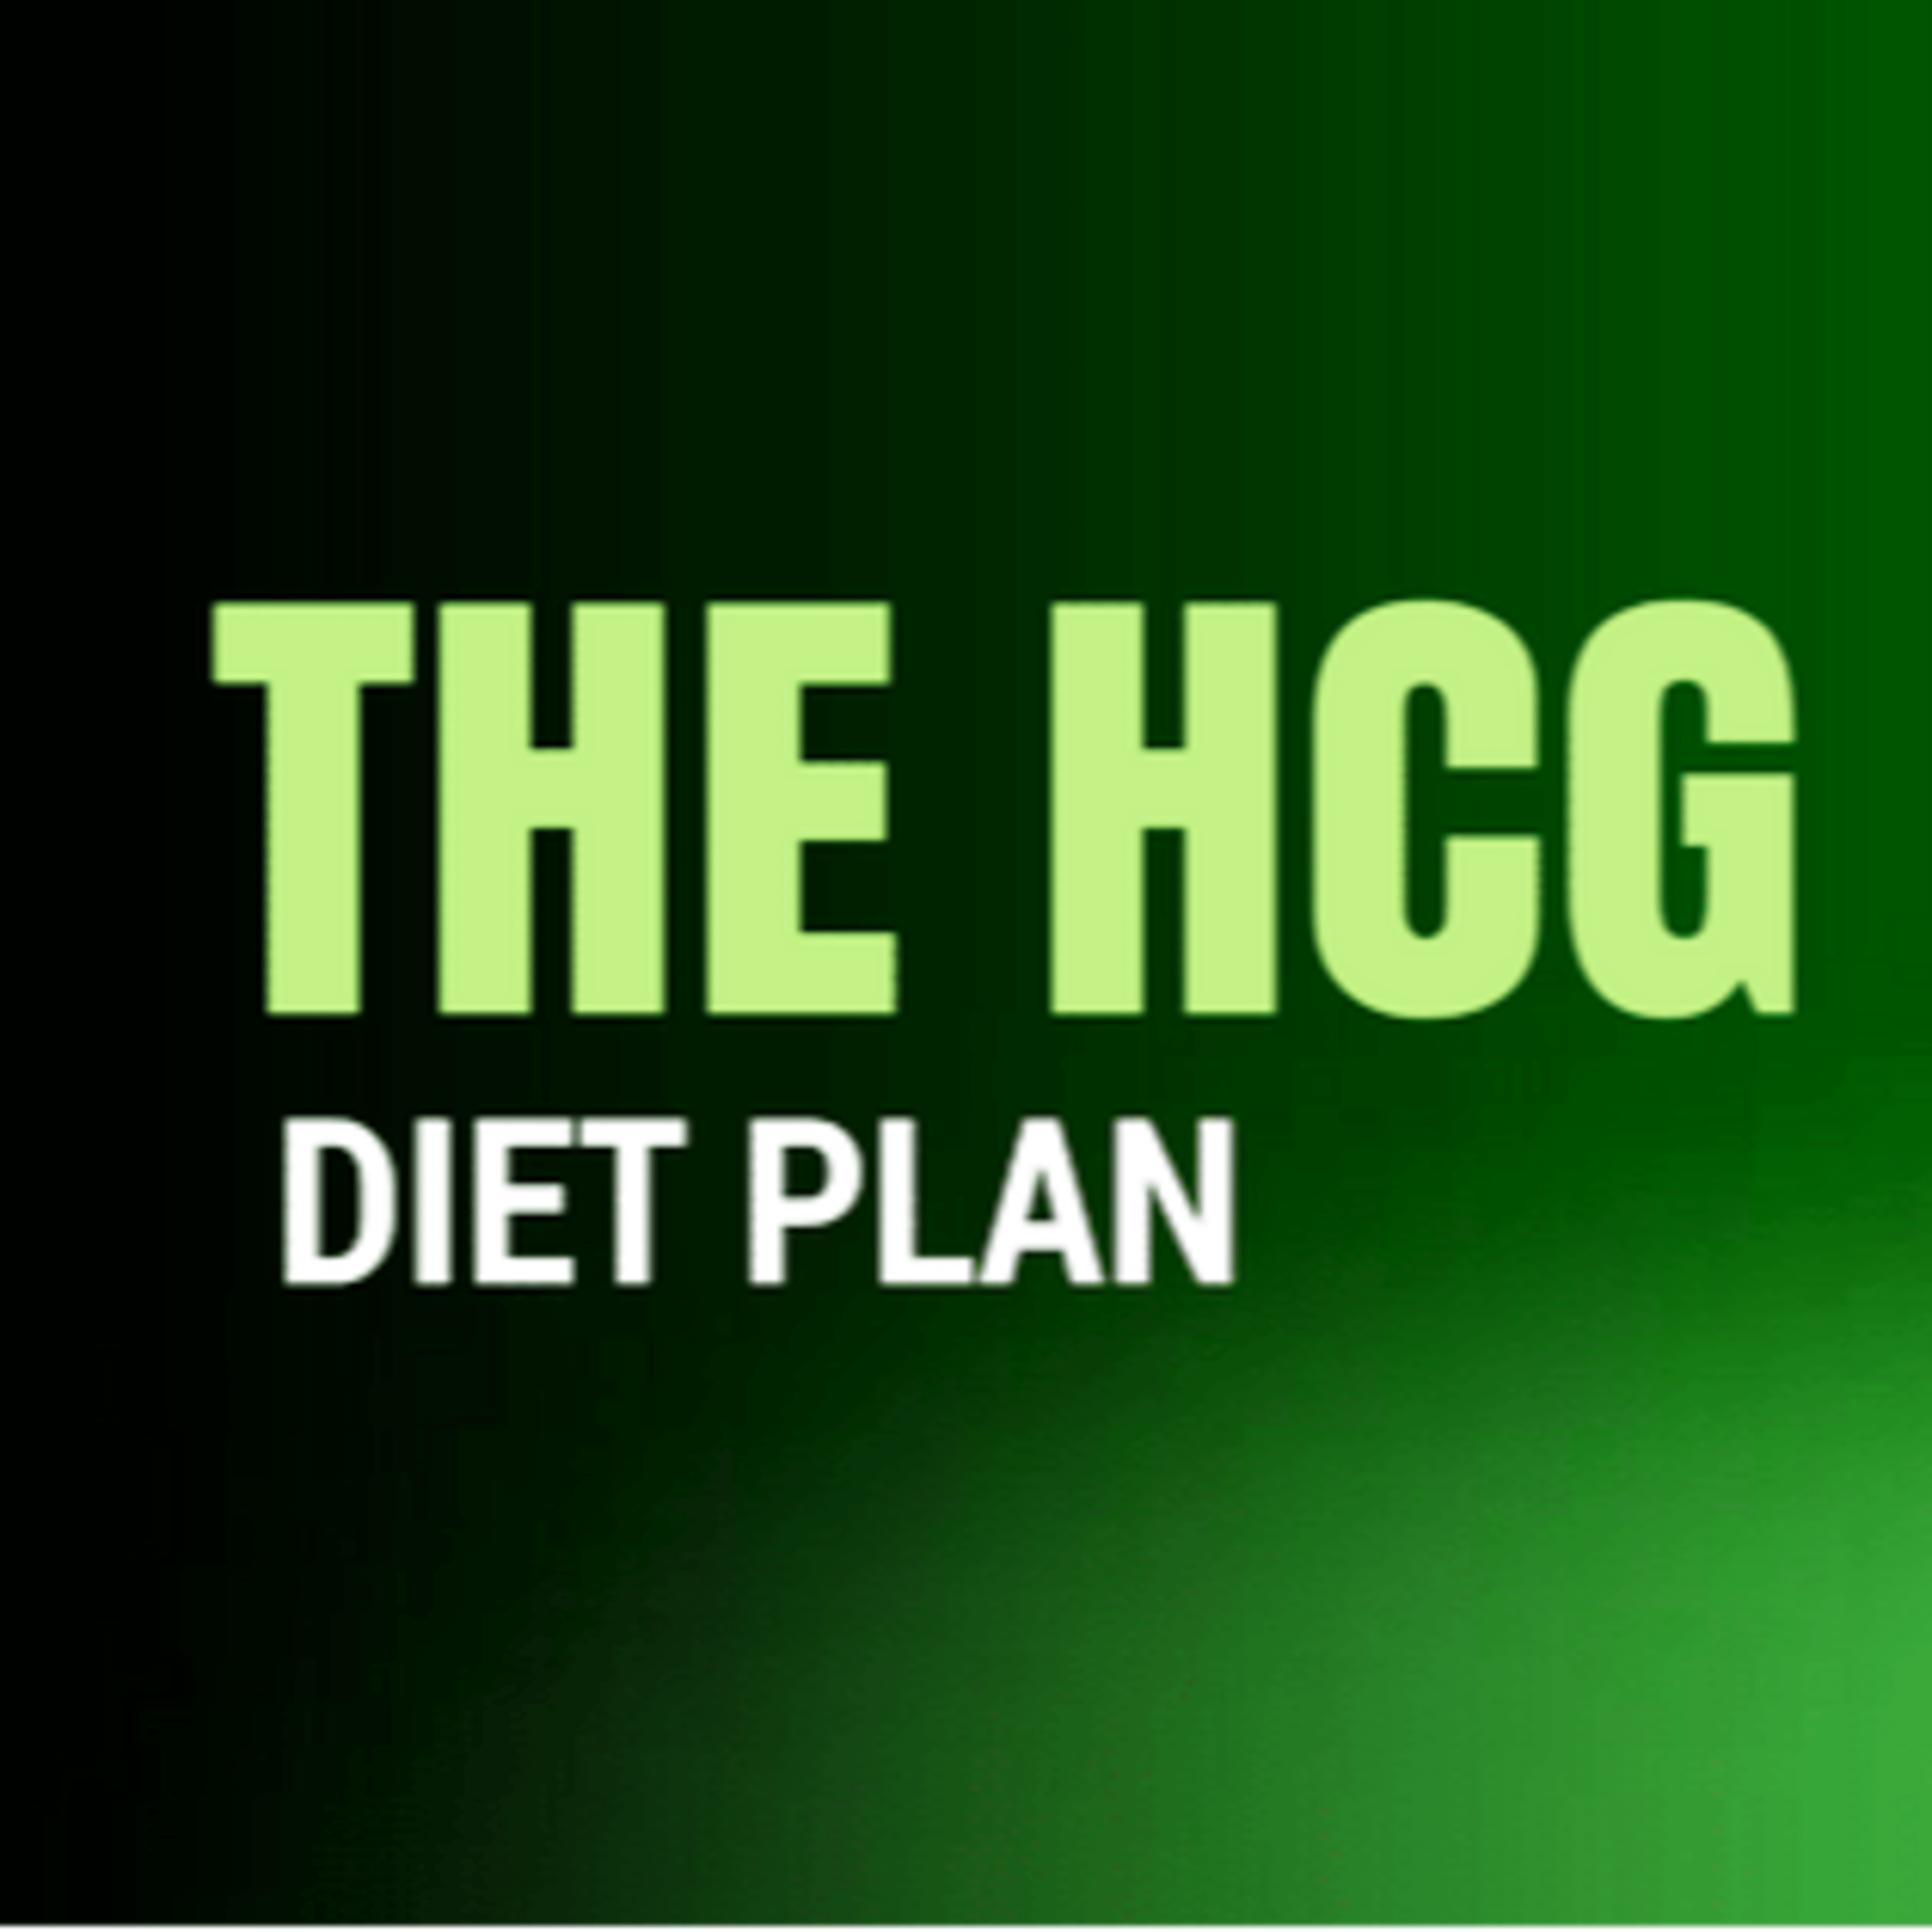 Official HCG Diet Plan Code